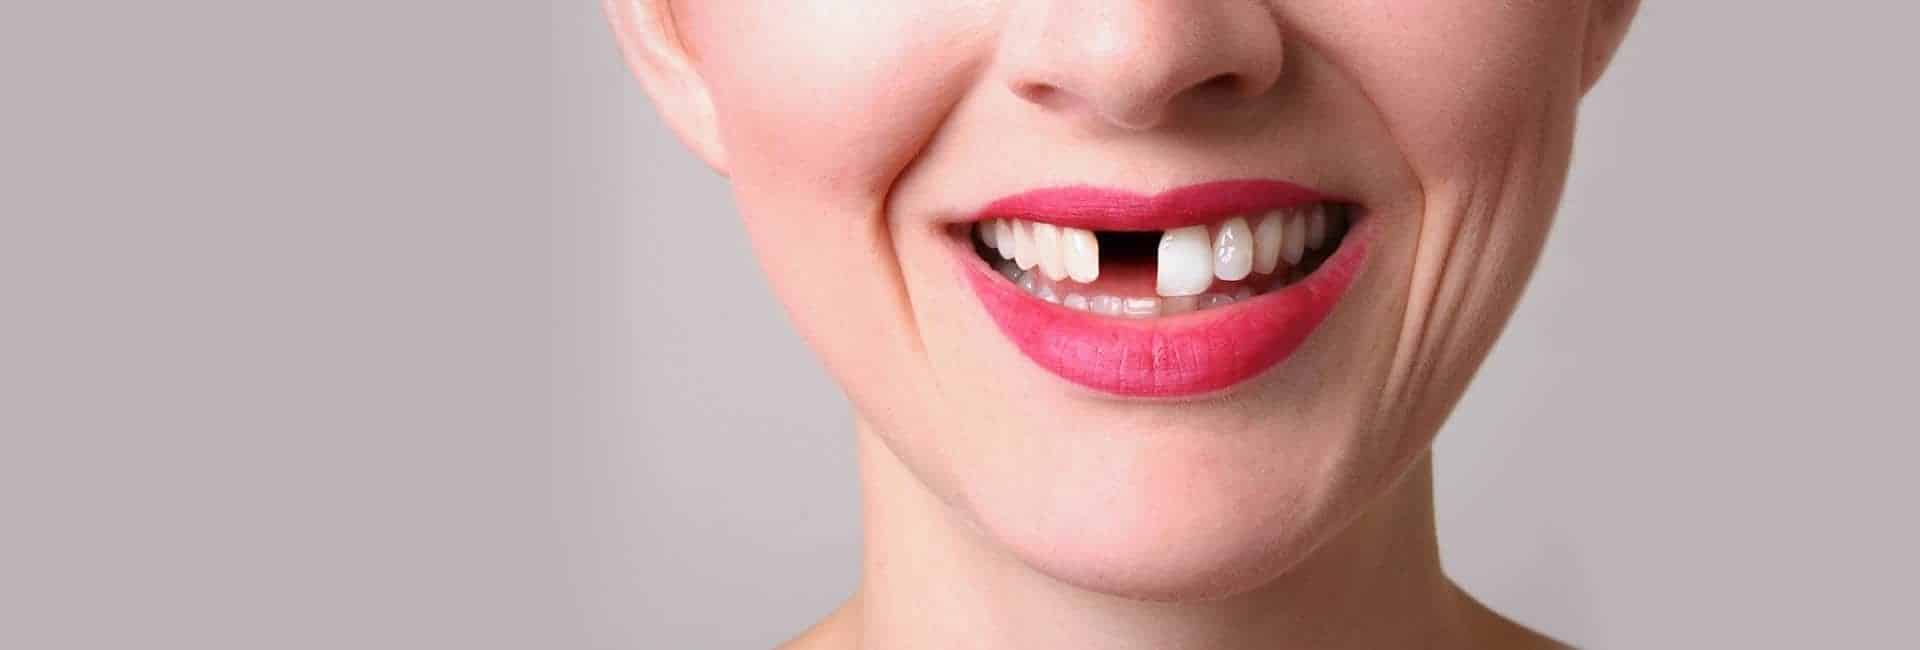 Diş Fırçalama Oranları Düşük: Neden, Nasıl Ve Ne Kadar Diş Sağlığımıza Dikkat Etmeliyiz?